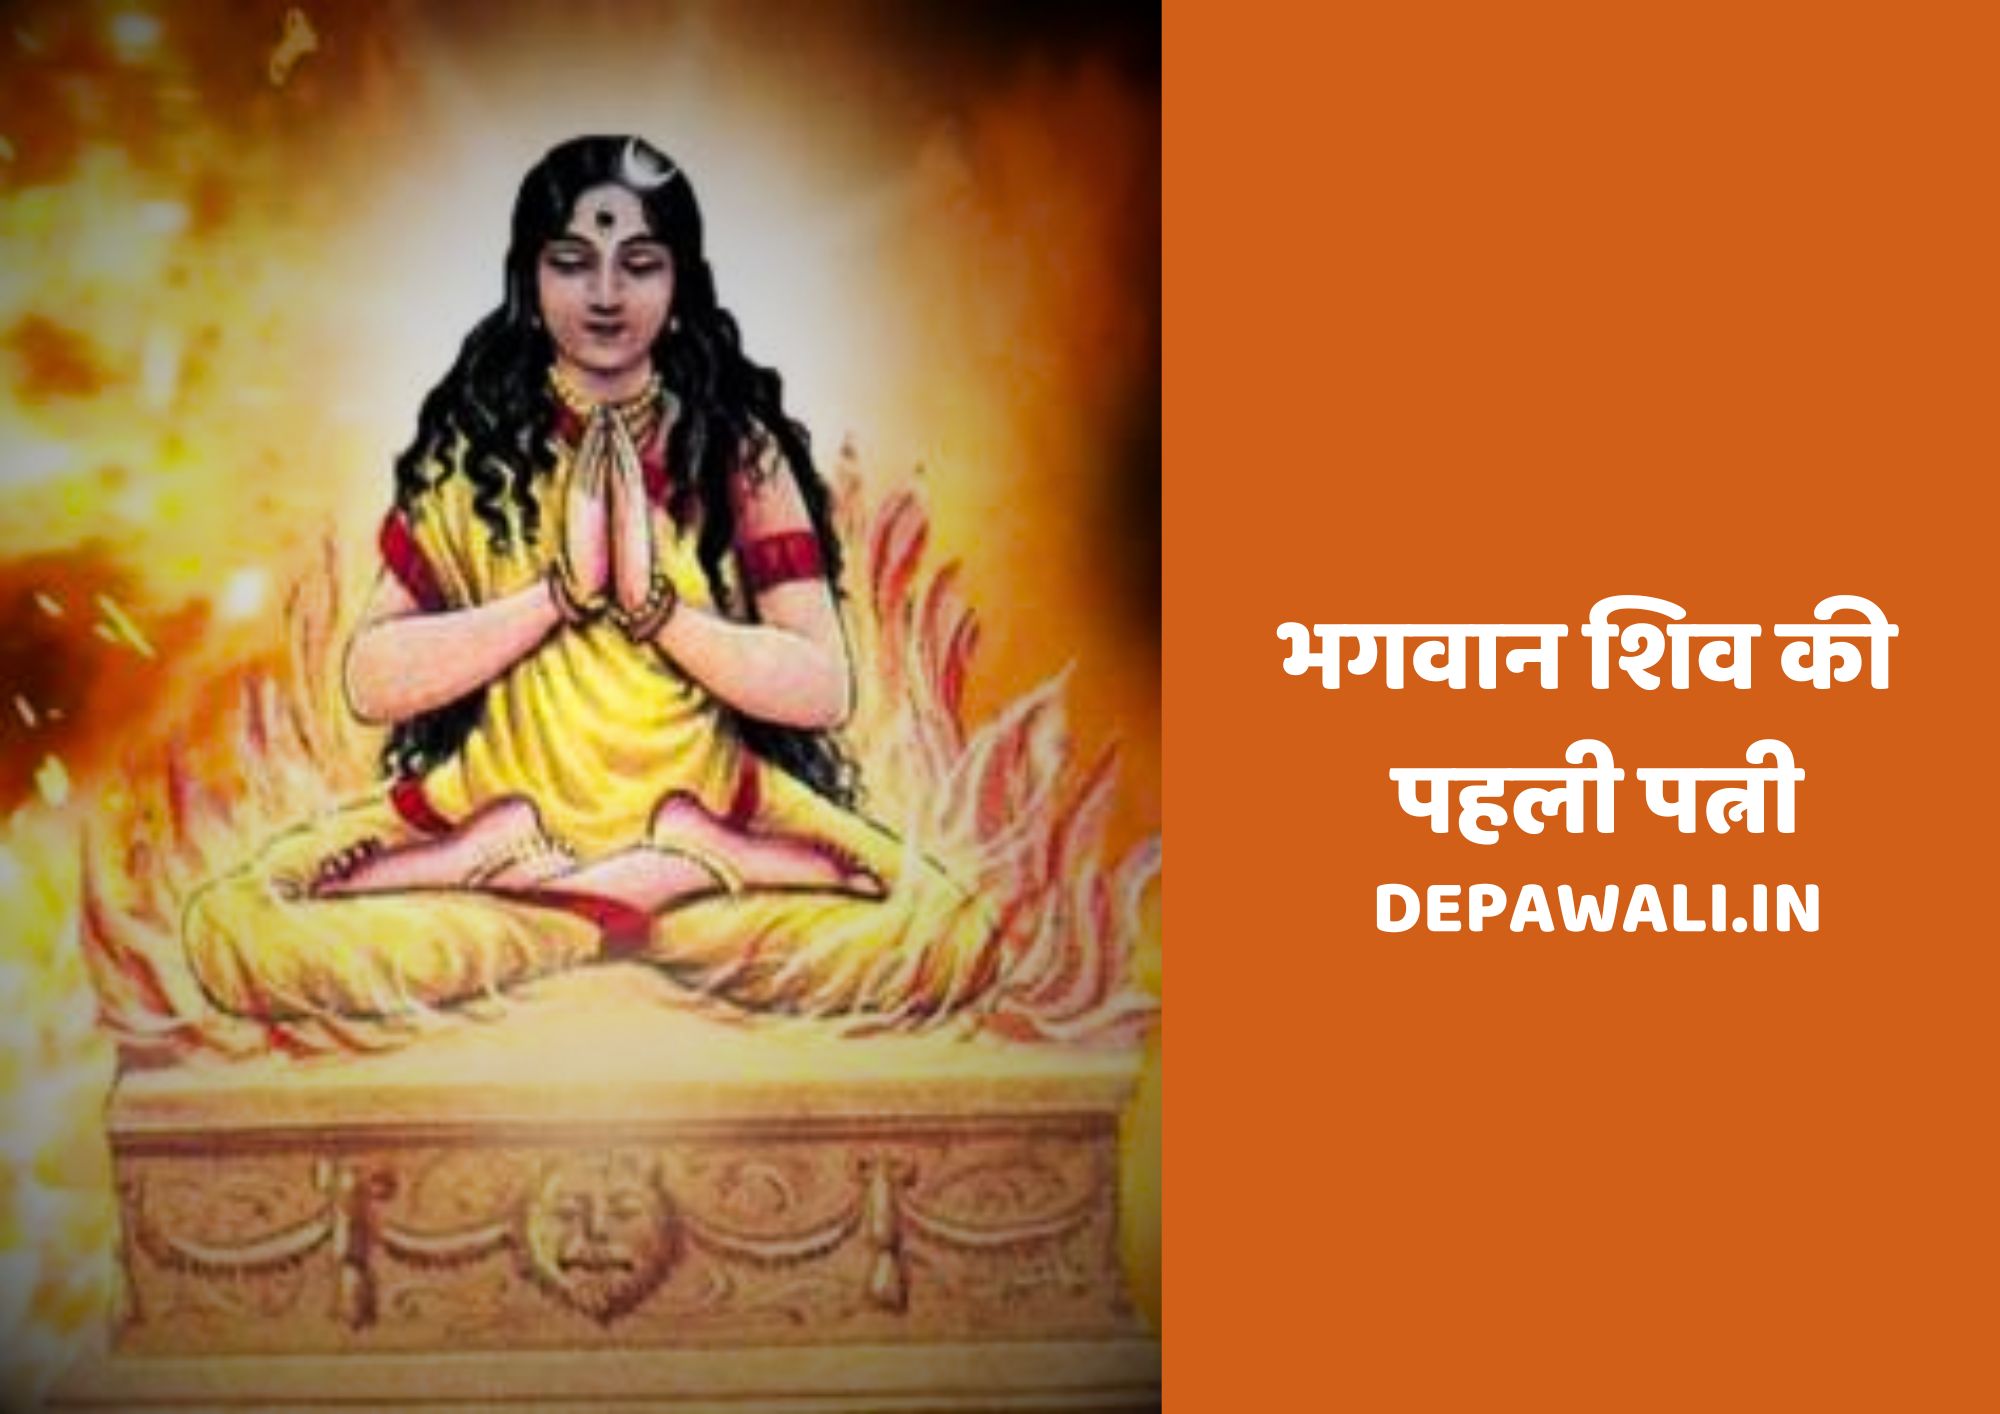 भगवान शिव की पहली पत्नी कौन थी और काली माता किसकी पत्नी थी?